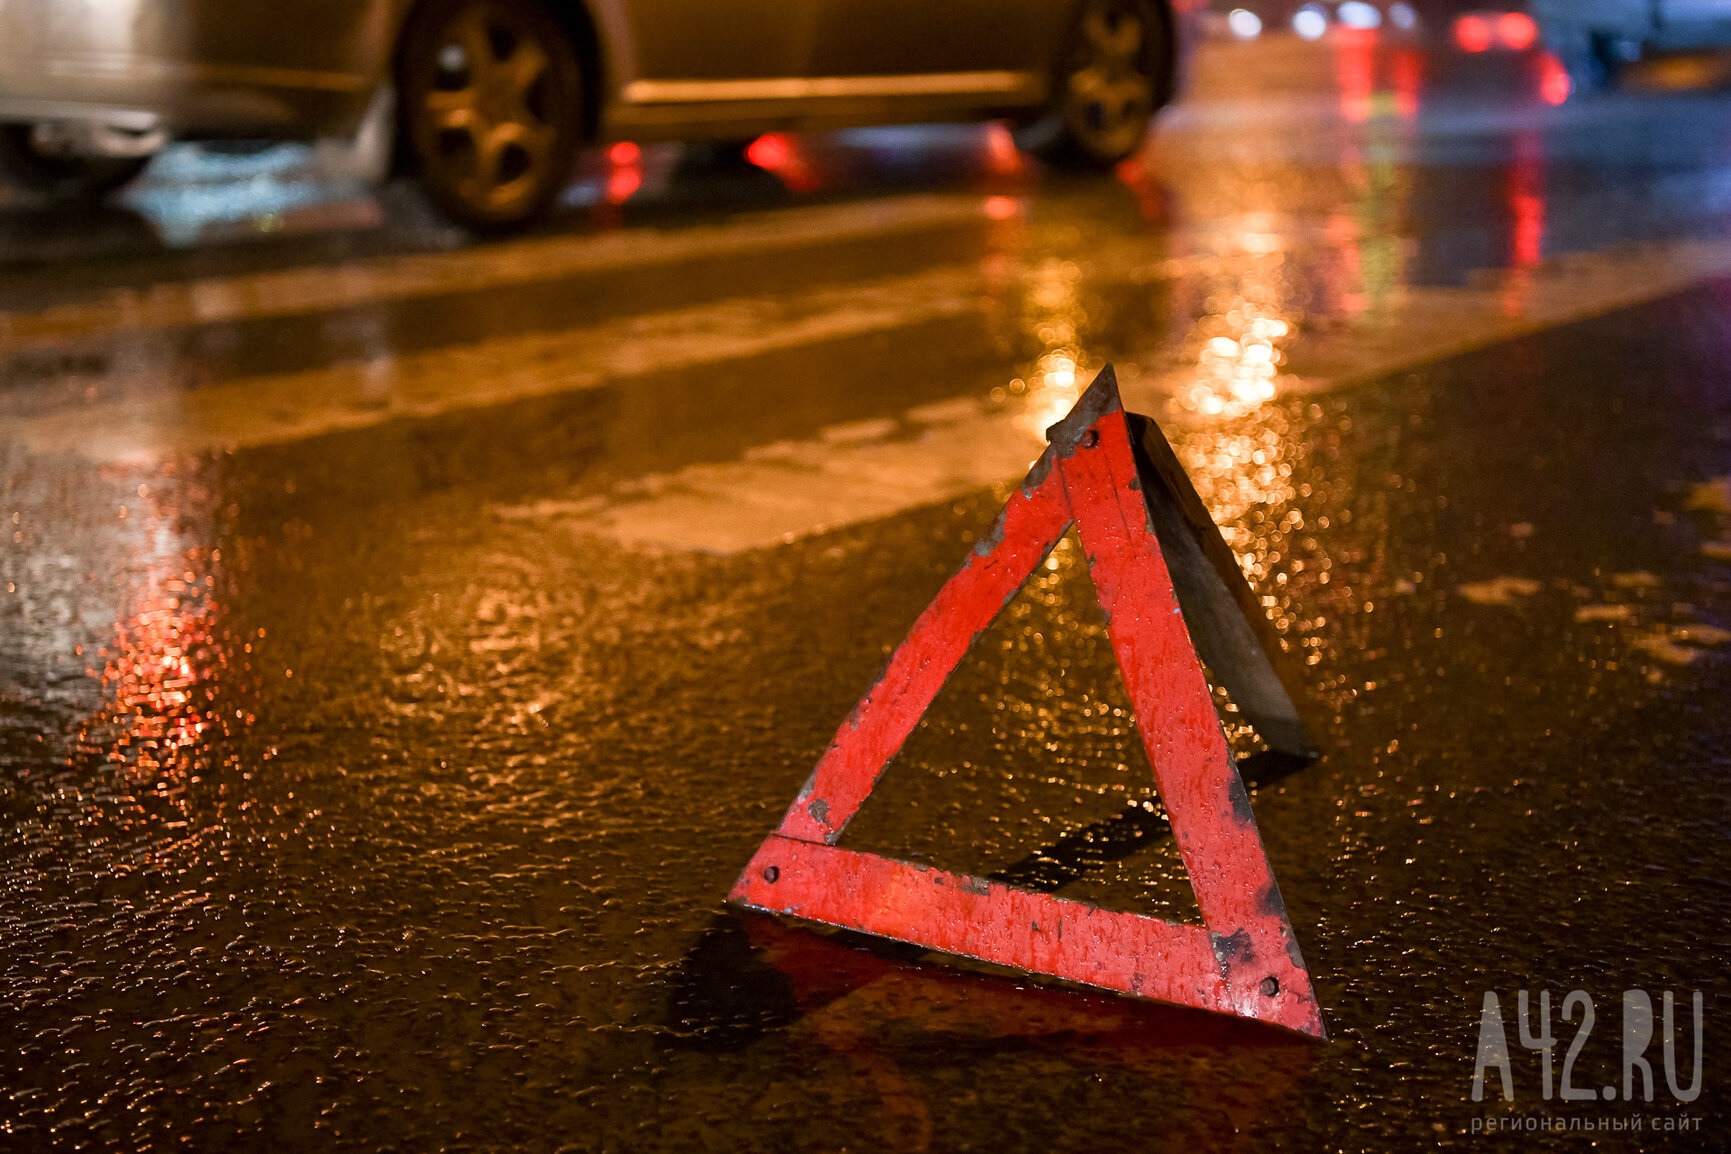 В Кемерове водитель неустановленного автомобиля снёс остановку и скрылся с места аварии